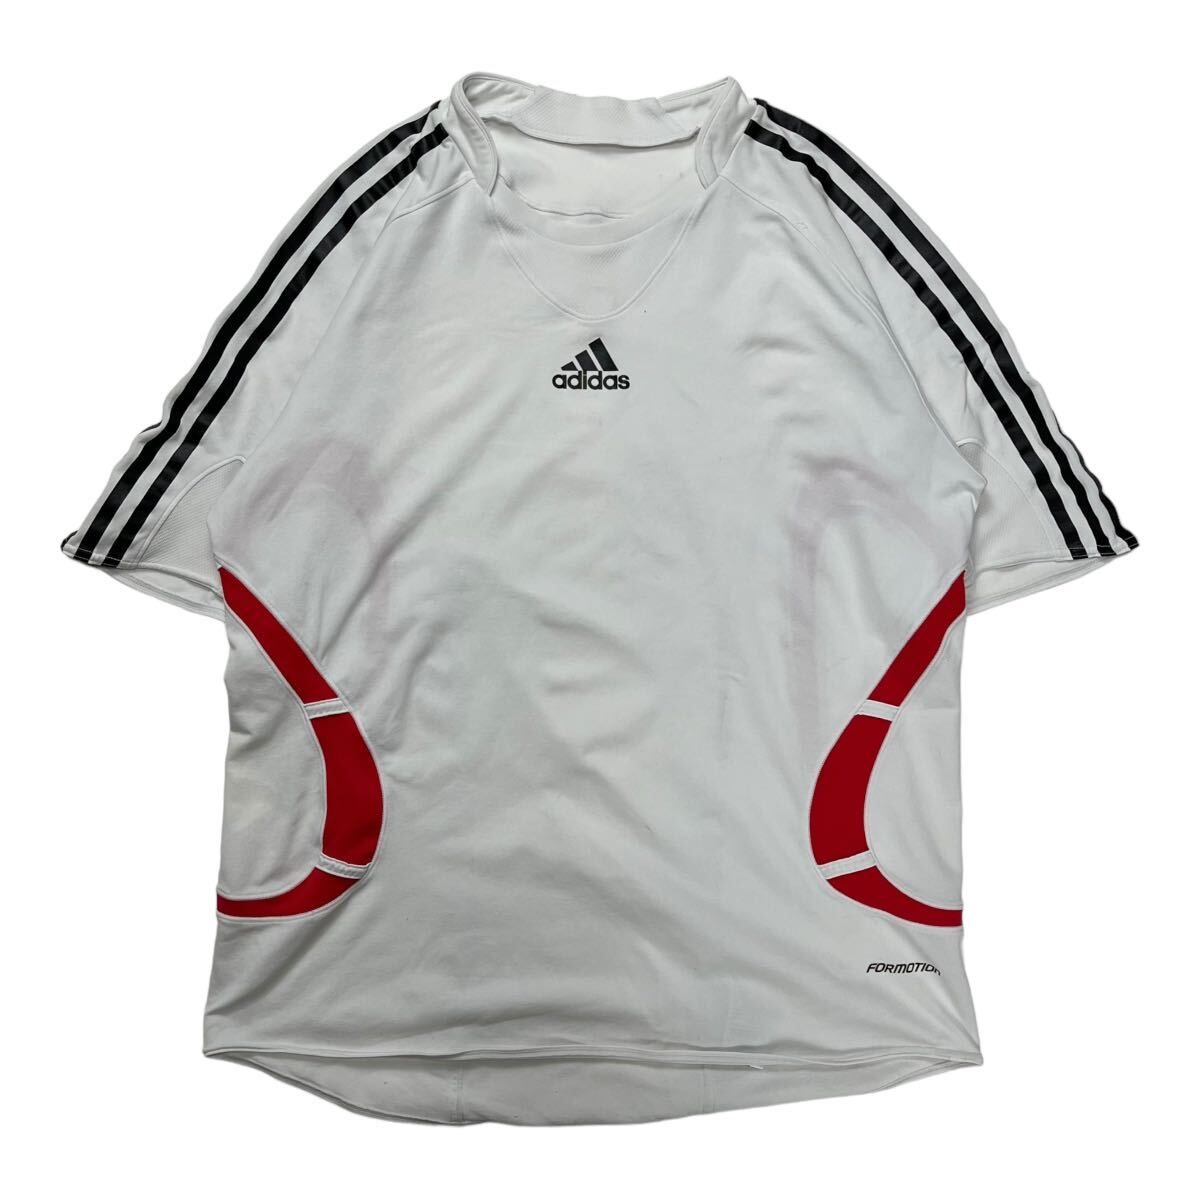 adidas アディダス ゲームシャツ プラクティスシャツ スポーツウェア パフォーマンスロゴ ホワイト/レッド/ブラック Lの画像1